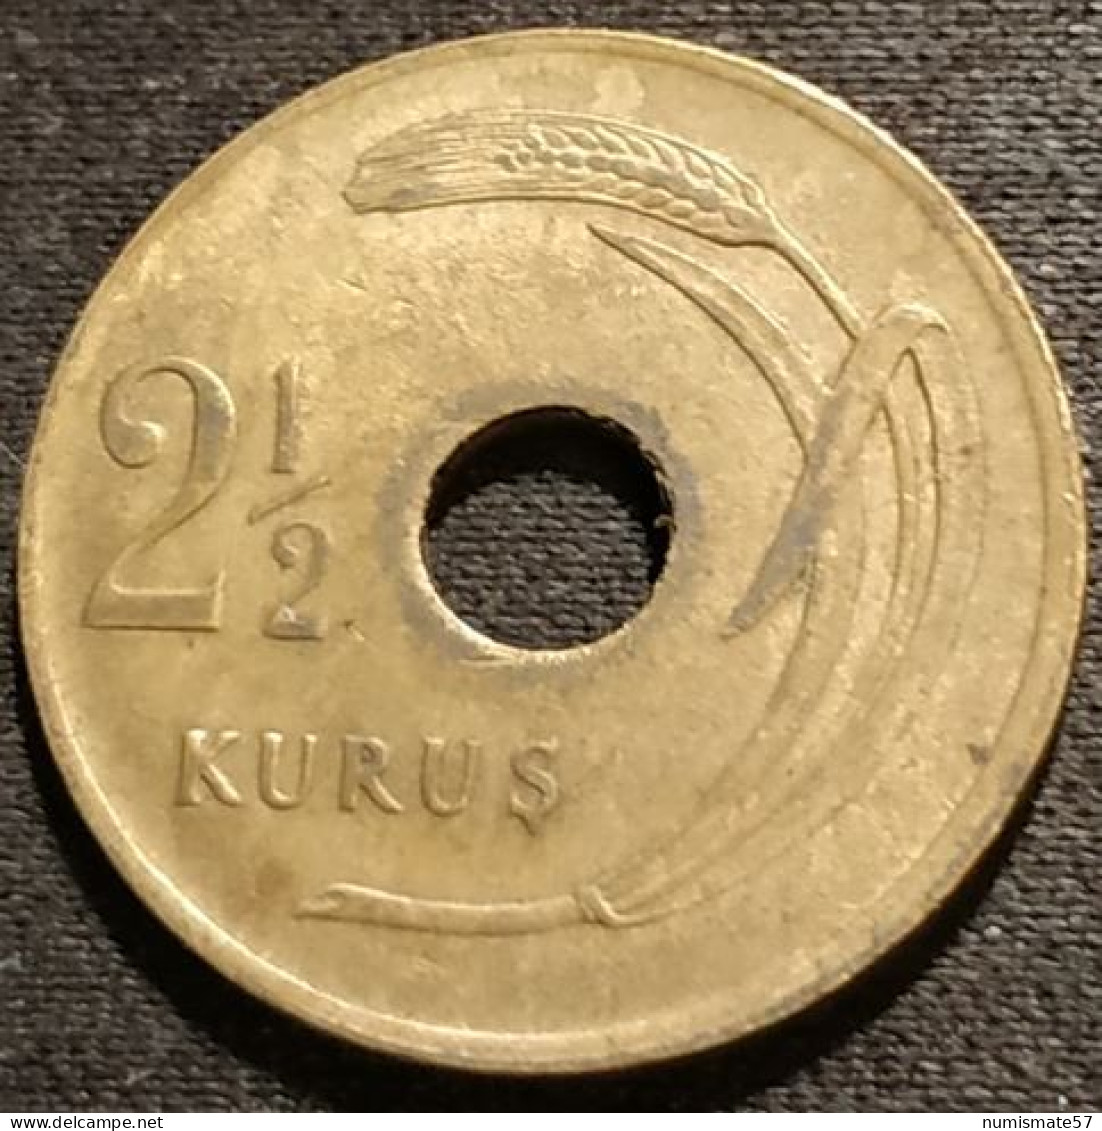 TURQUIE - TURKEY - 2 1/2 KURUS 1948 - KM 885 - ( 2½ Kuruş ) - Turquie